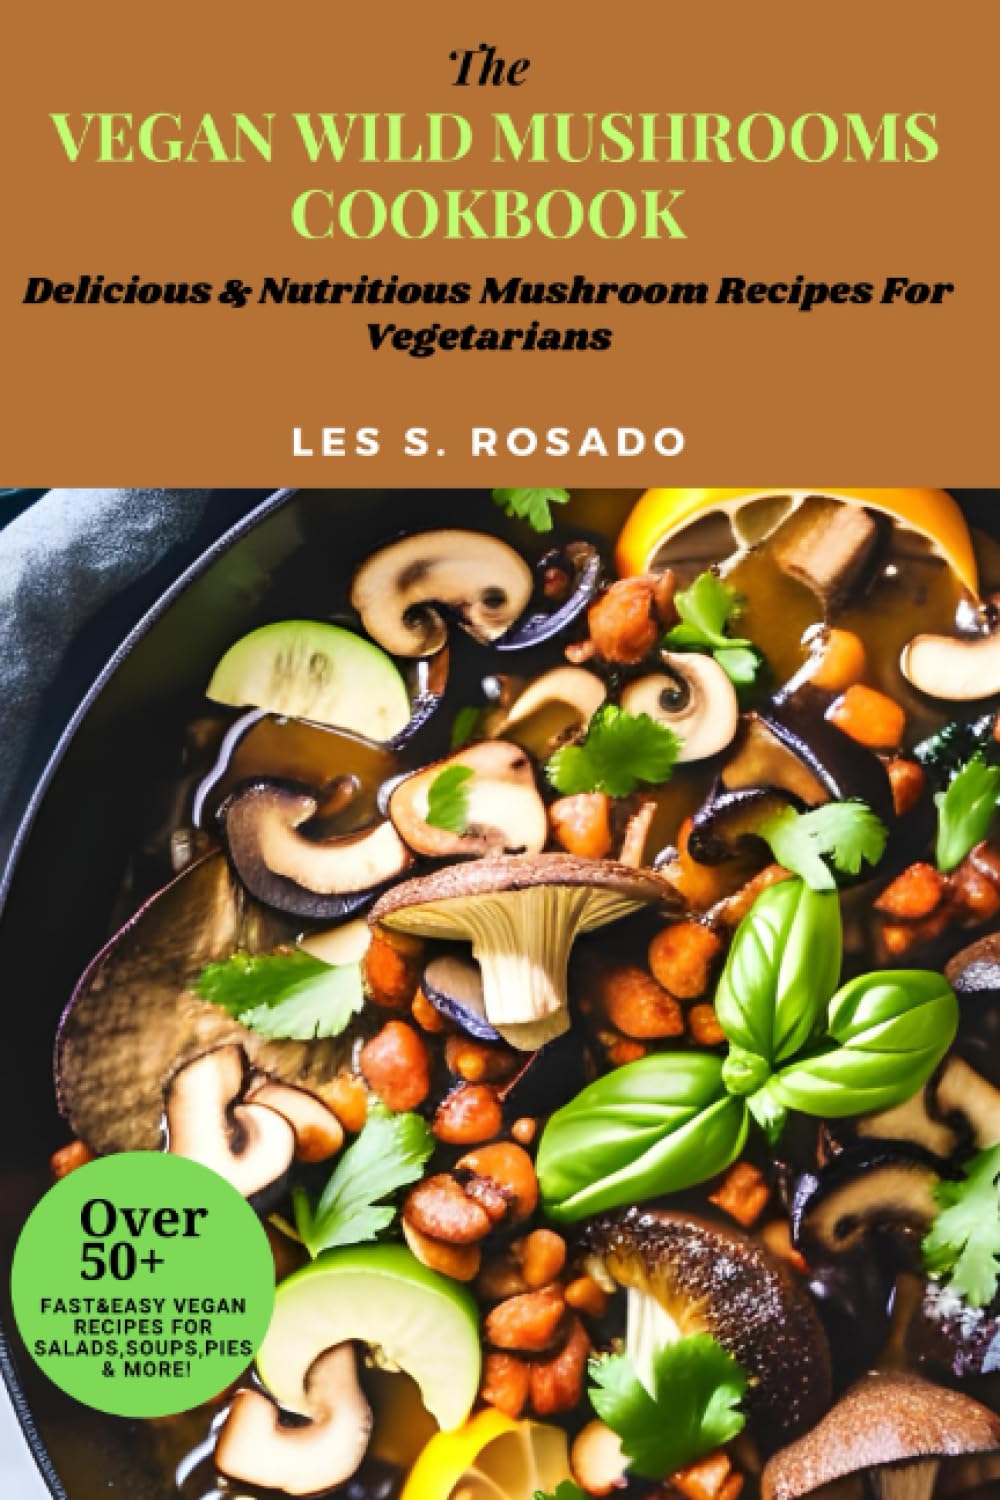 THE VEGAN WILD MUSHROOMS COOKBOOK: Delicious & Nutritious Mushroom Recipes For Vegetarians